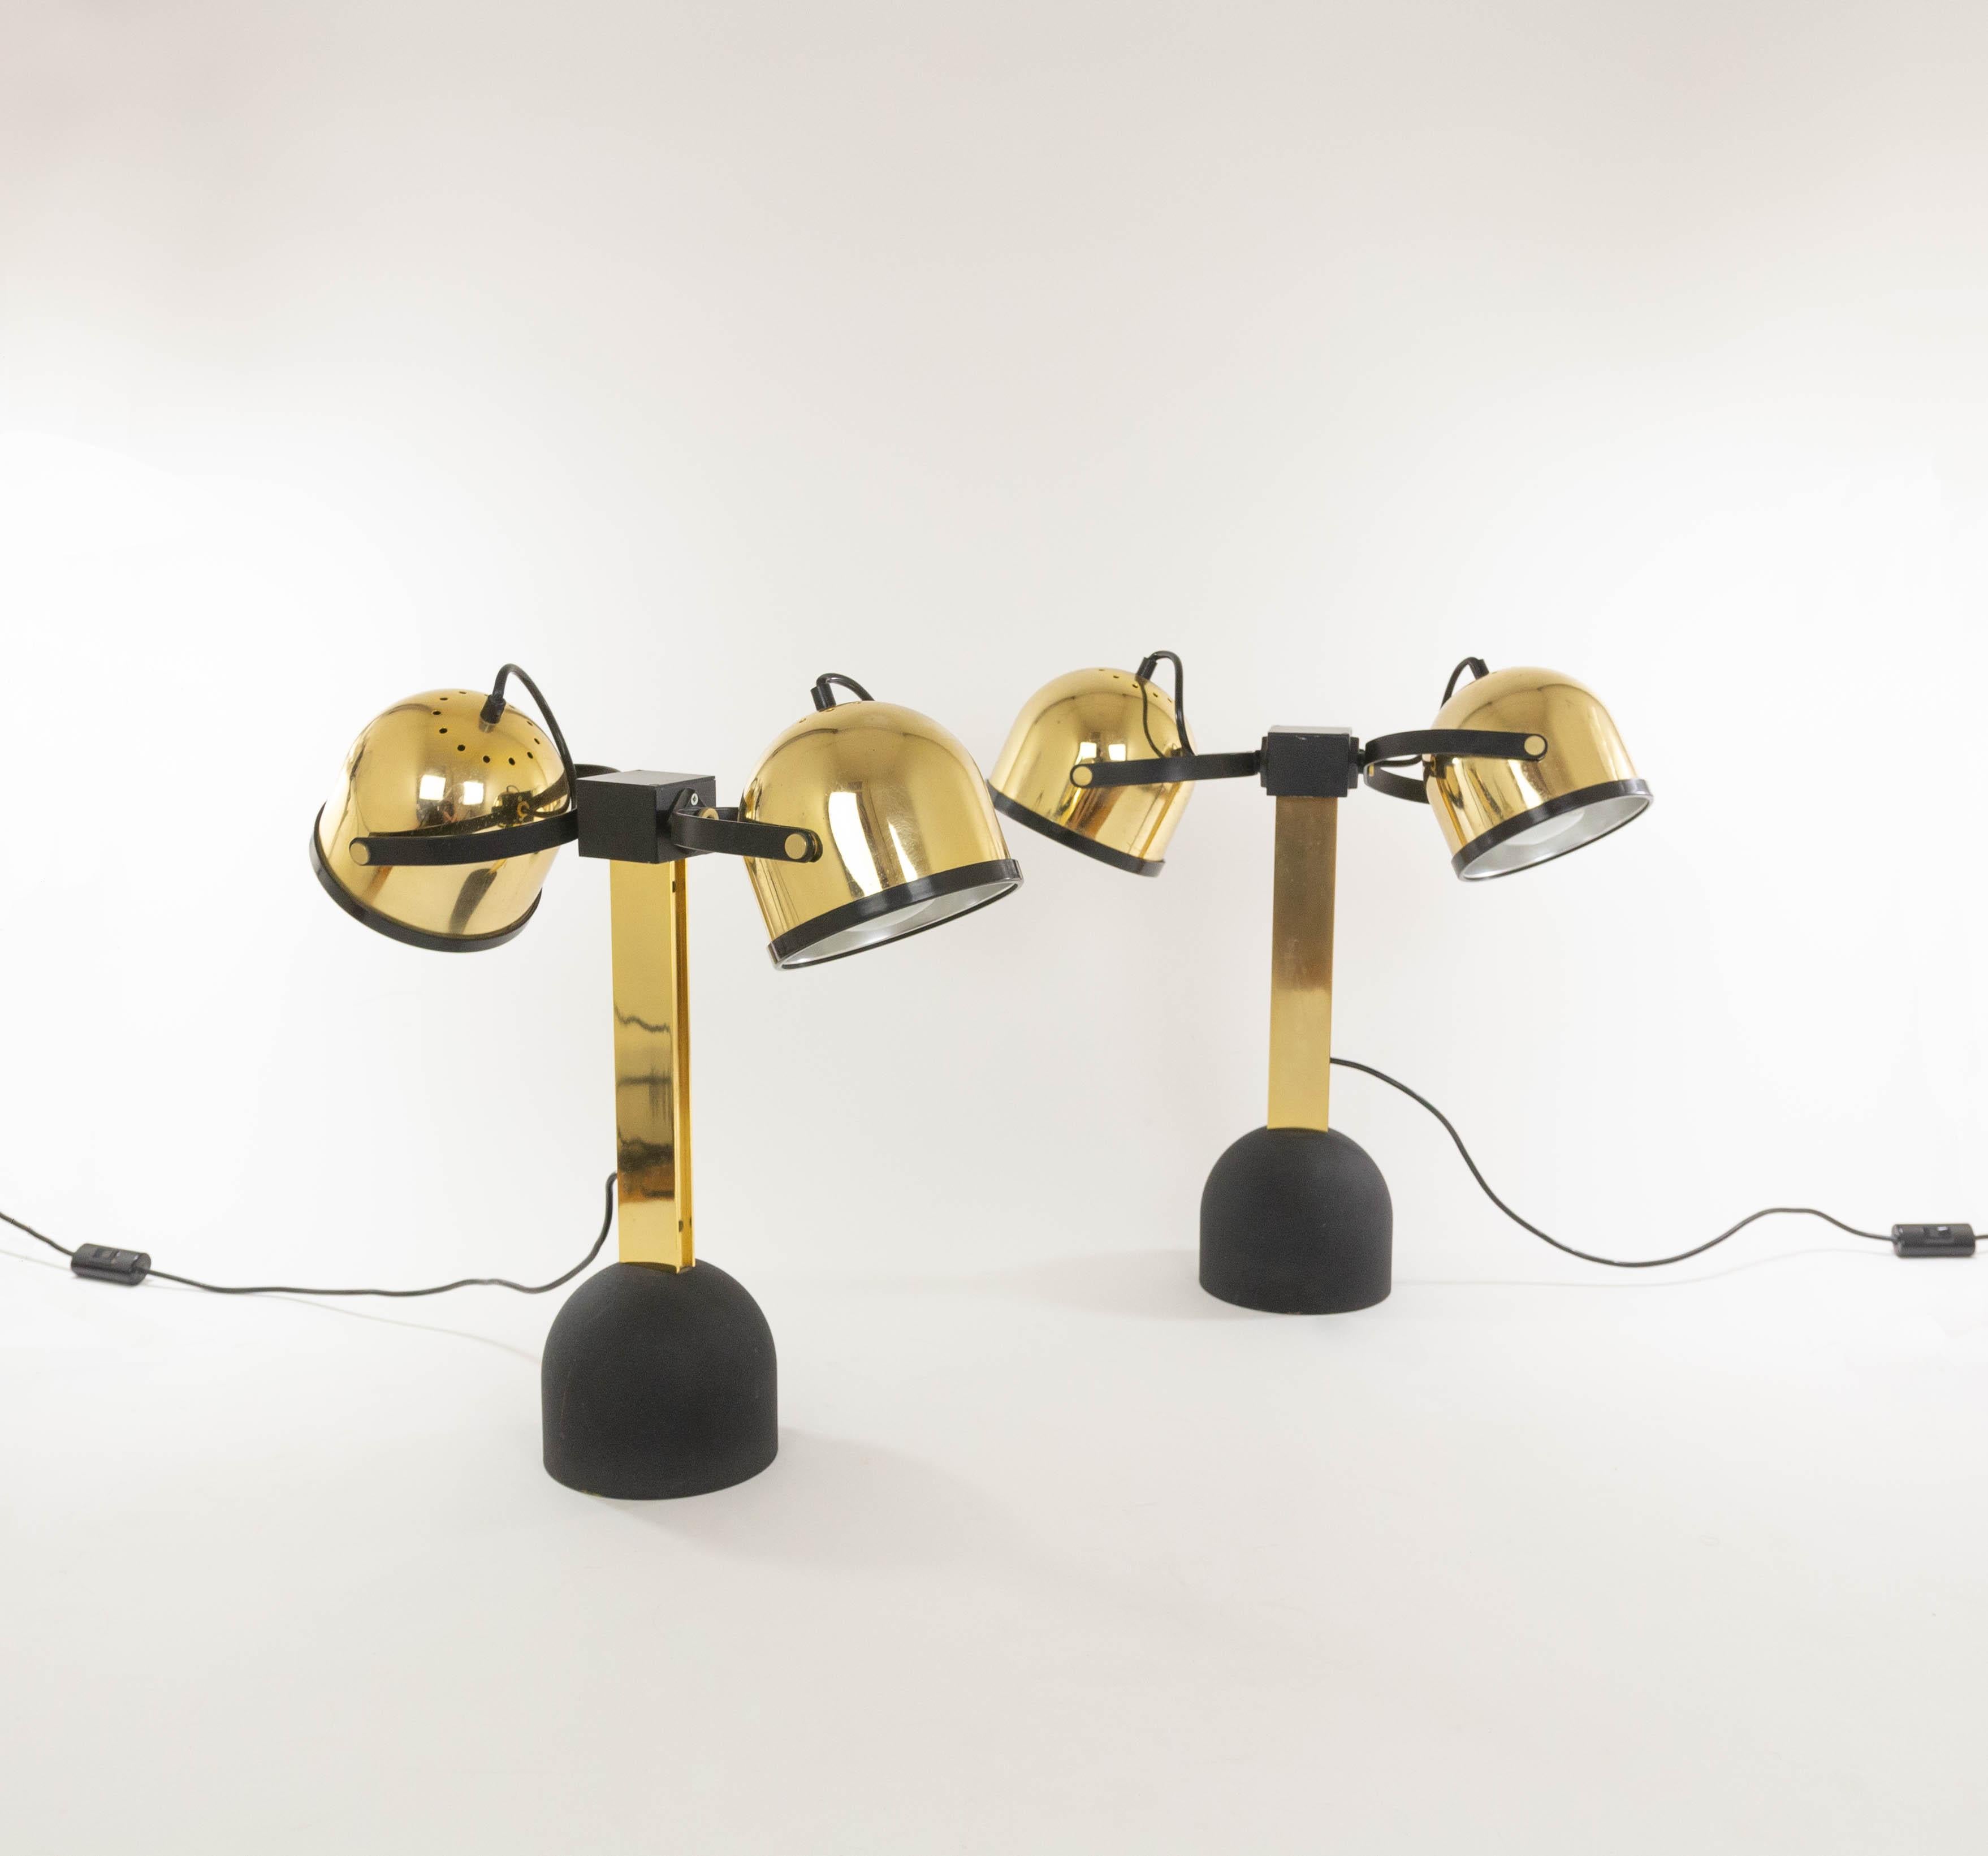 Paire de lampes de table Trepiù en laiton, conçues par Gae Aulenti et Livio Castiglioni pour Stilnovo dans les années 1970. Ces lampes de table font partie de la gamme Sistema Trepiù.

Le modèle se compose de deux spots pouvant être tournés dans